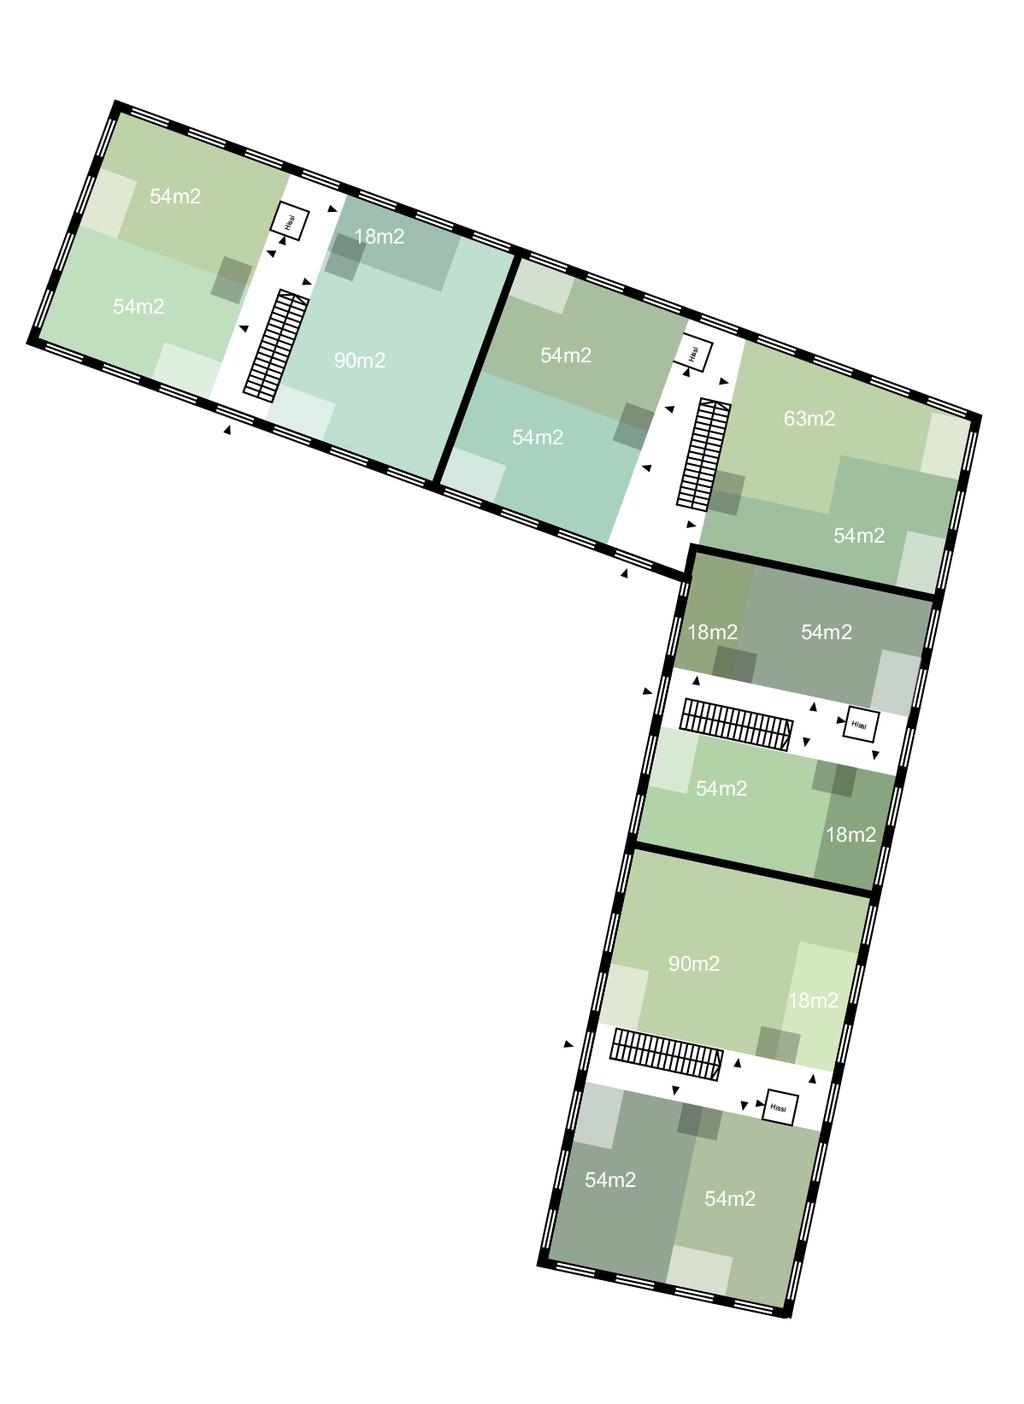 MASSAKUSTOMOINTI 1:500 Huonepohjien tetris-peli Pohjat on jaettu 3mx3m neliöihin ja rakennusten ainoat kiinteät elementit ovat porrashuoneet, mutta muuten asuntojen kokoa voi vaihdella